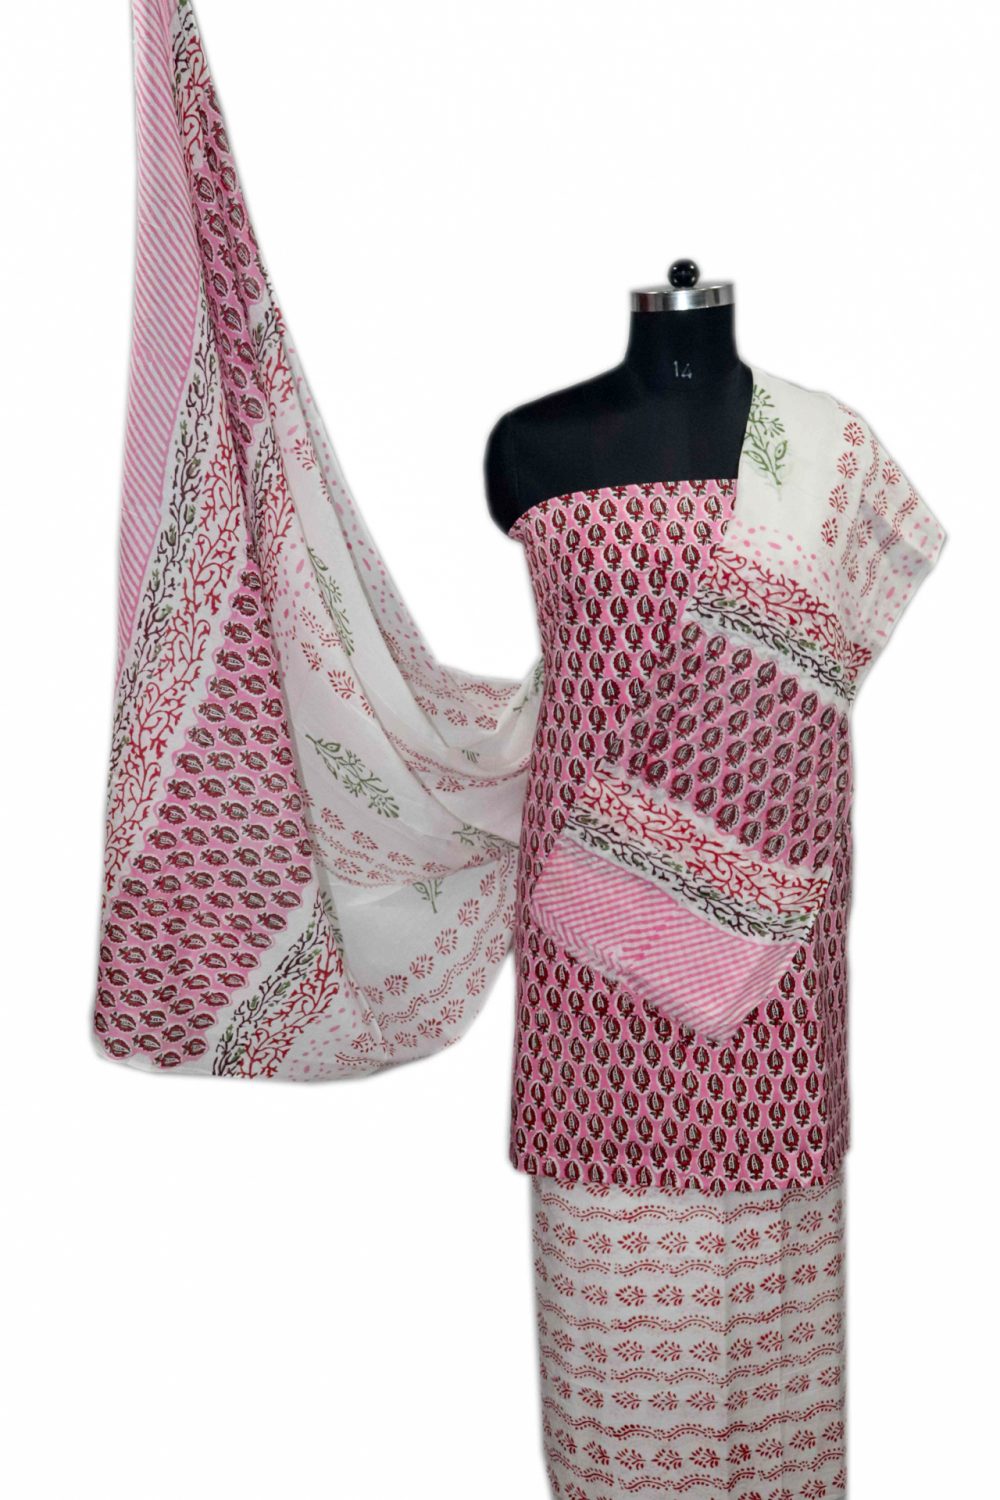 Floral Block Print Salwar suits with Mulmul Dupatta - JB312